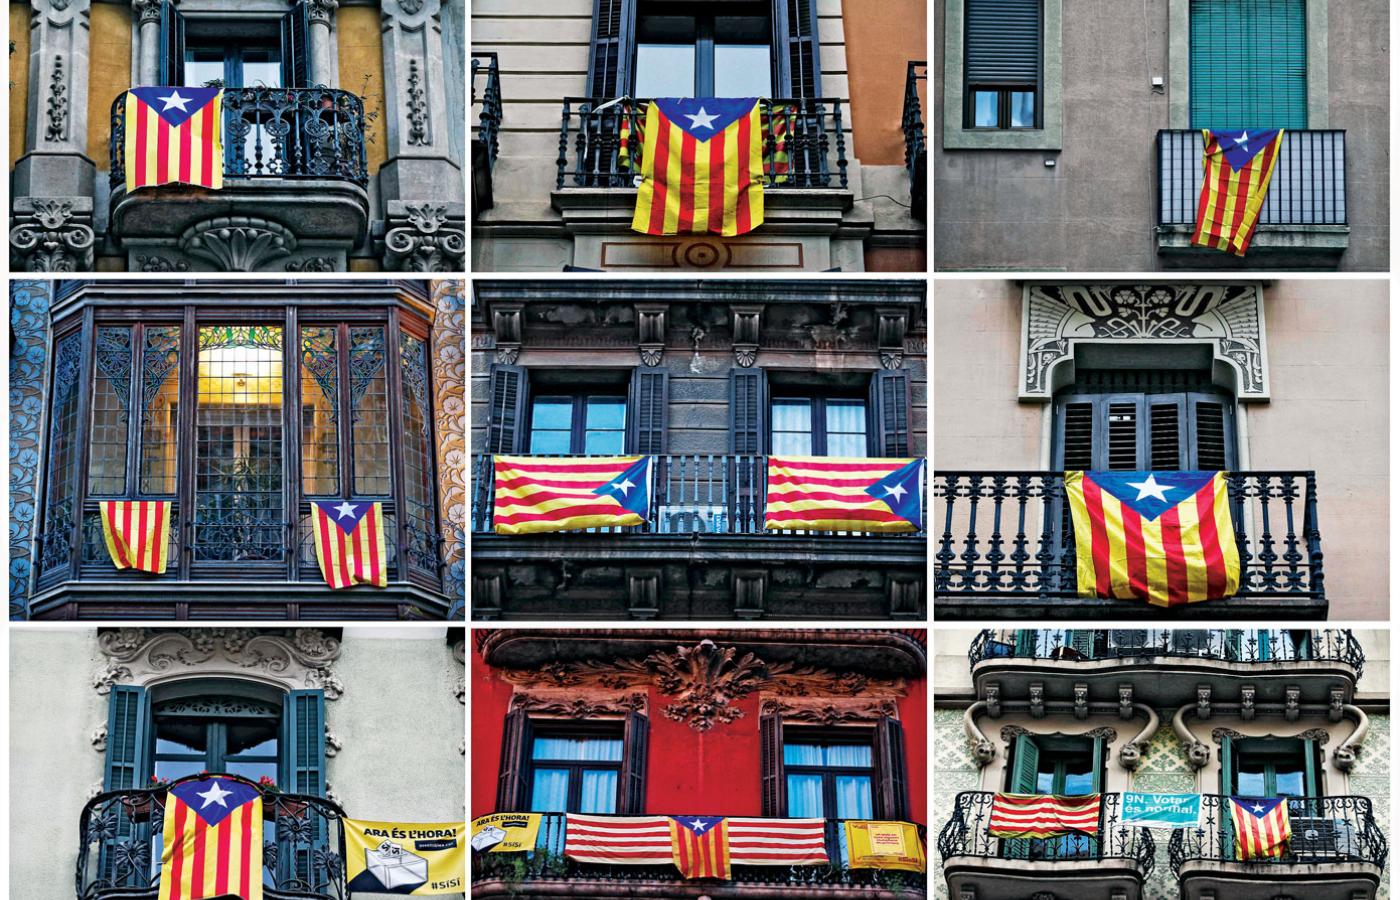 Okna i balkony Barcelony przed referendum w sprawie niepodległości Katalonii